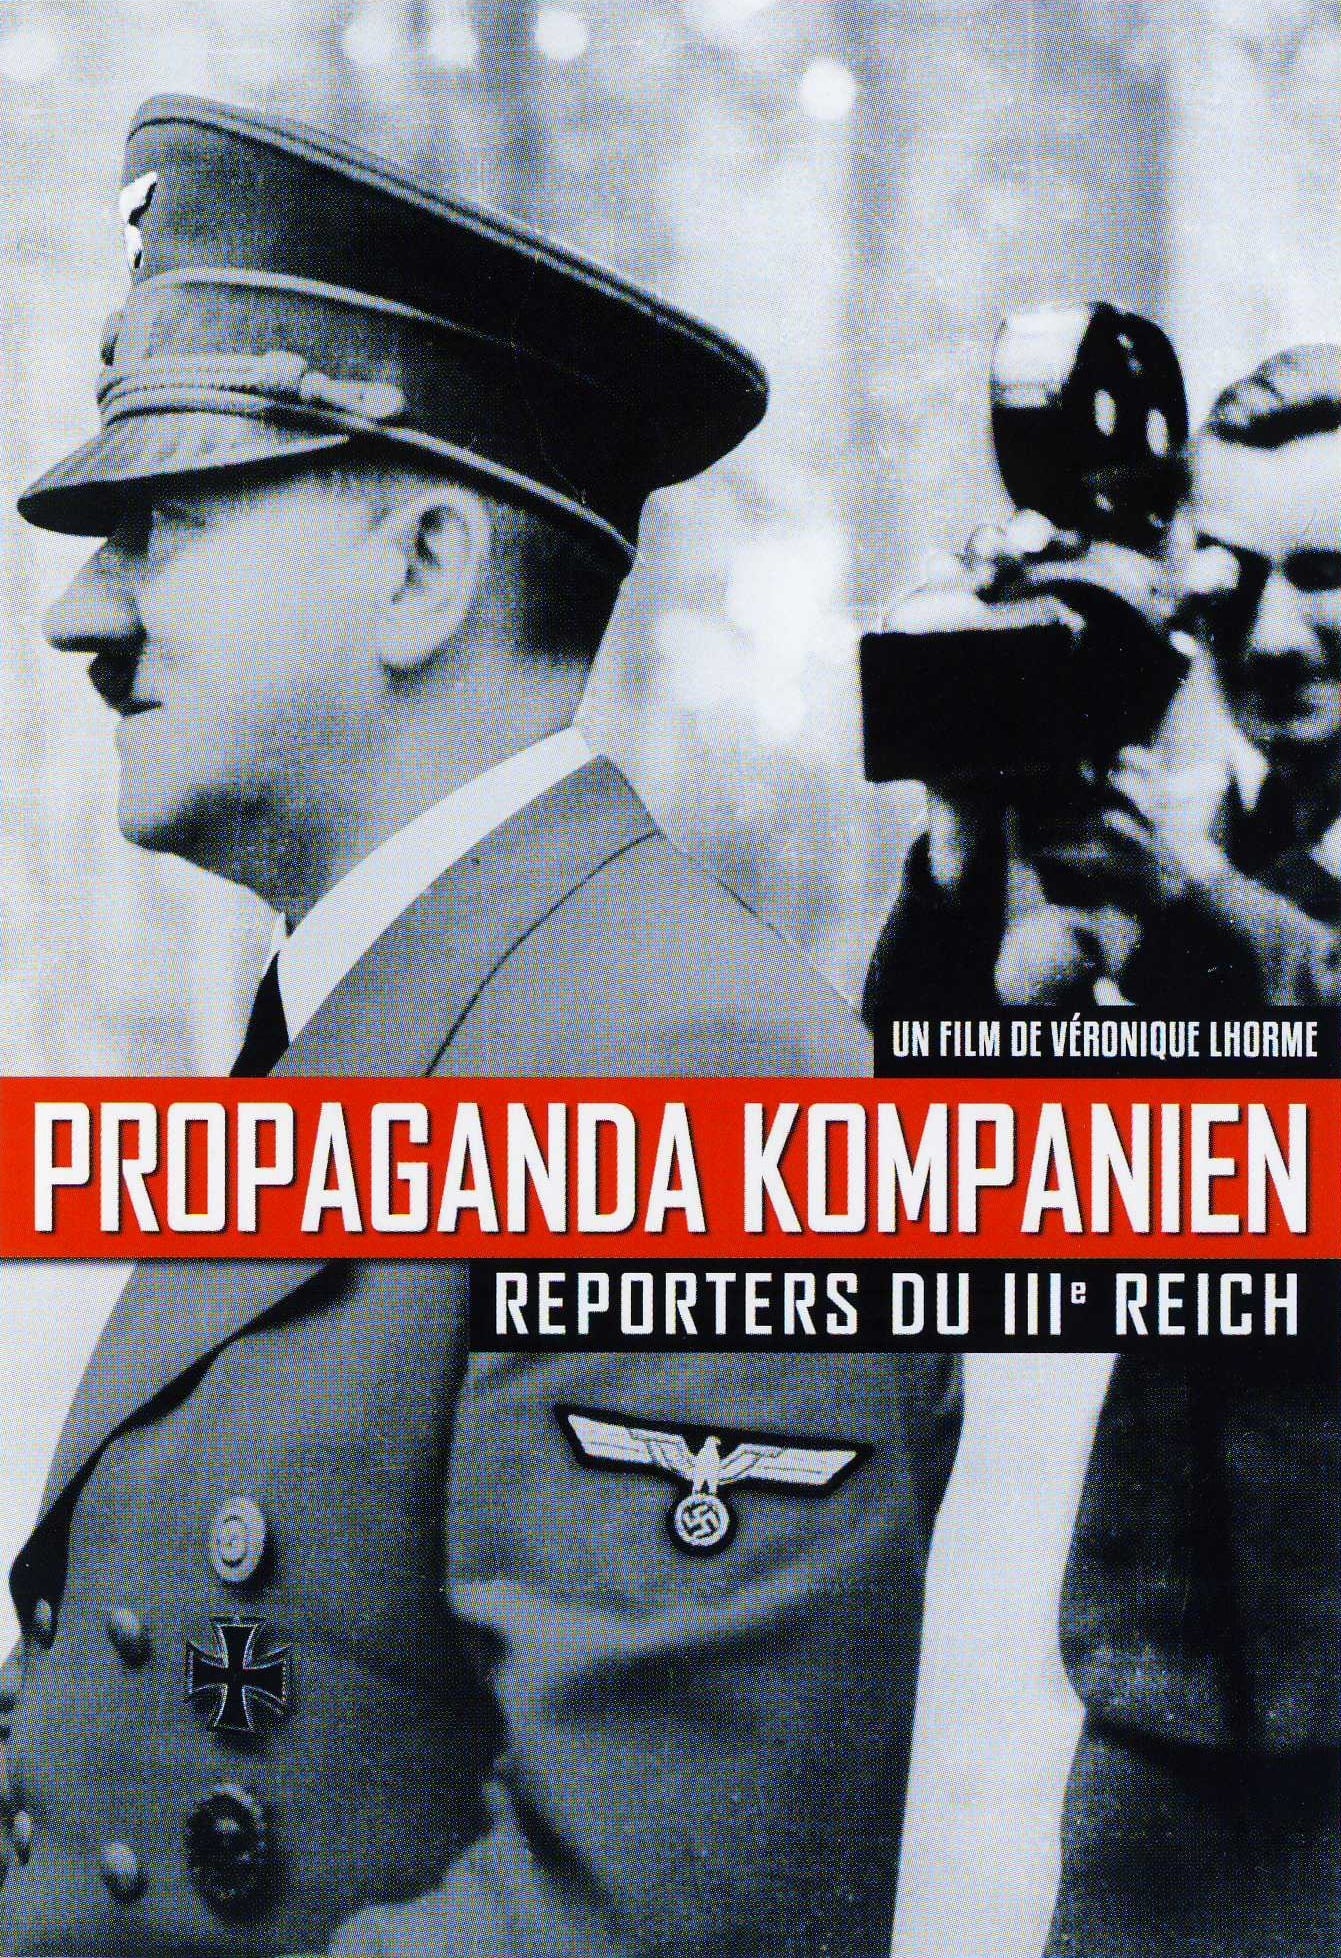 Propaganda Kompanien, reporters du IIIe Reich